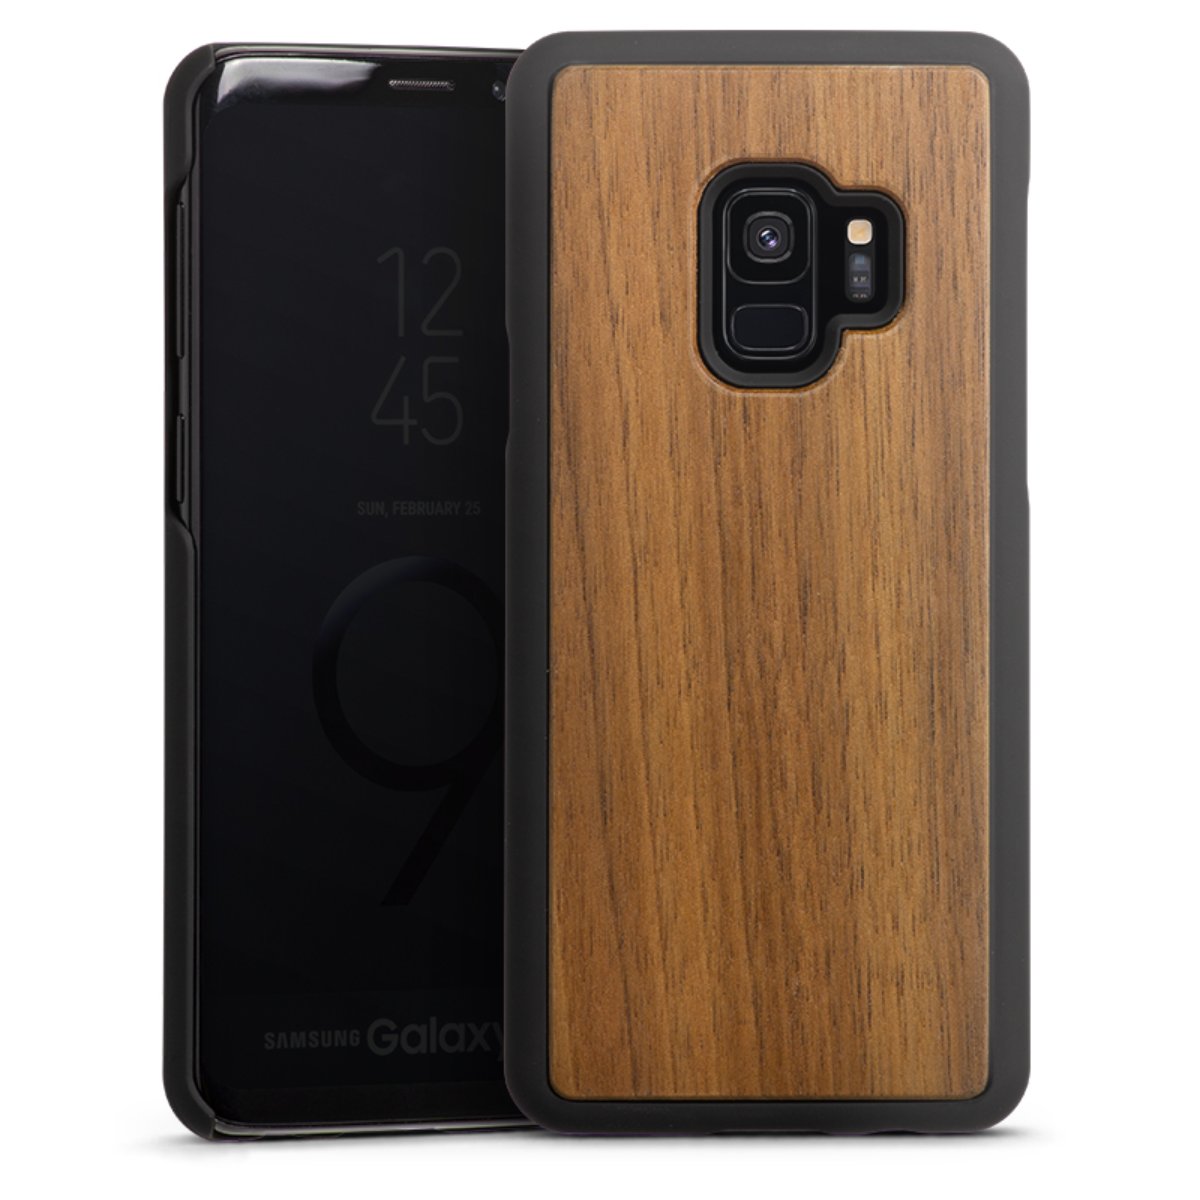 Wooden Hard Case für Samsung Galaxy S9